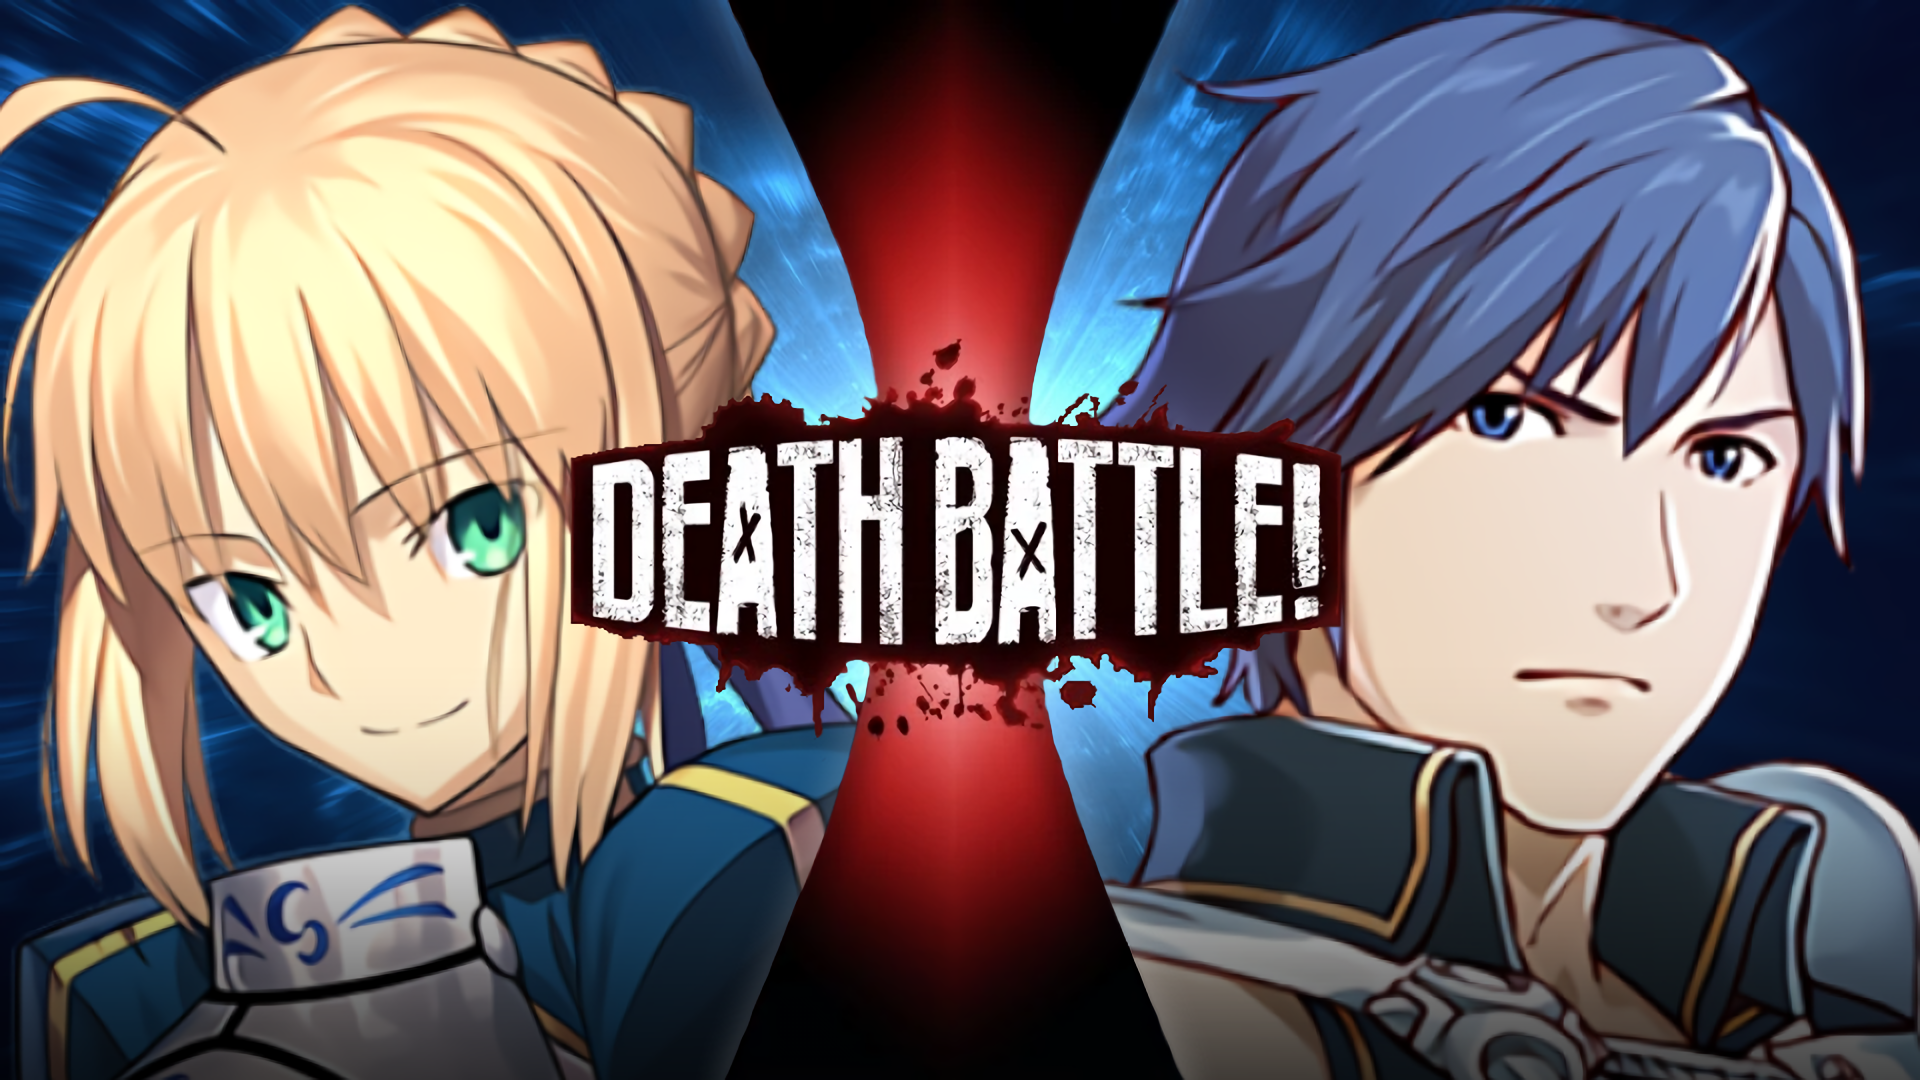 Death Battle: Gambit VS Twisted Fate by Scarce-Monics on DeviantArt